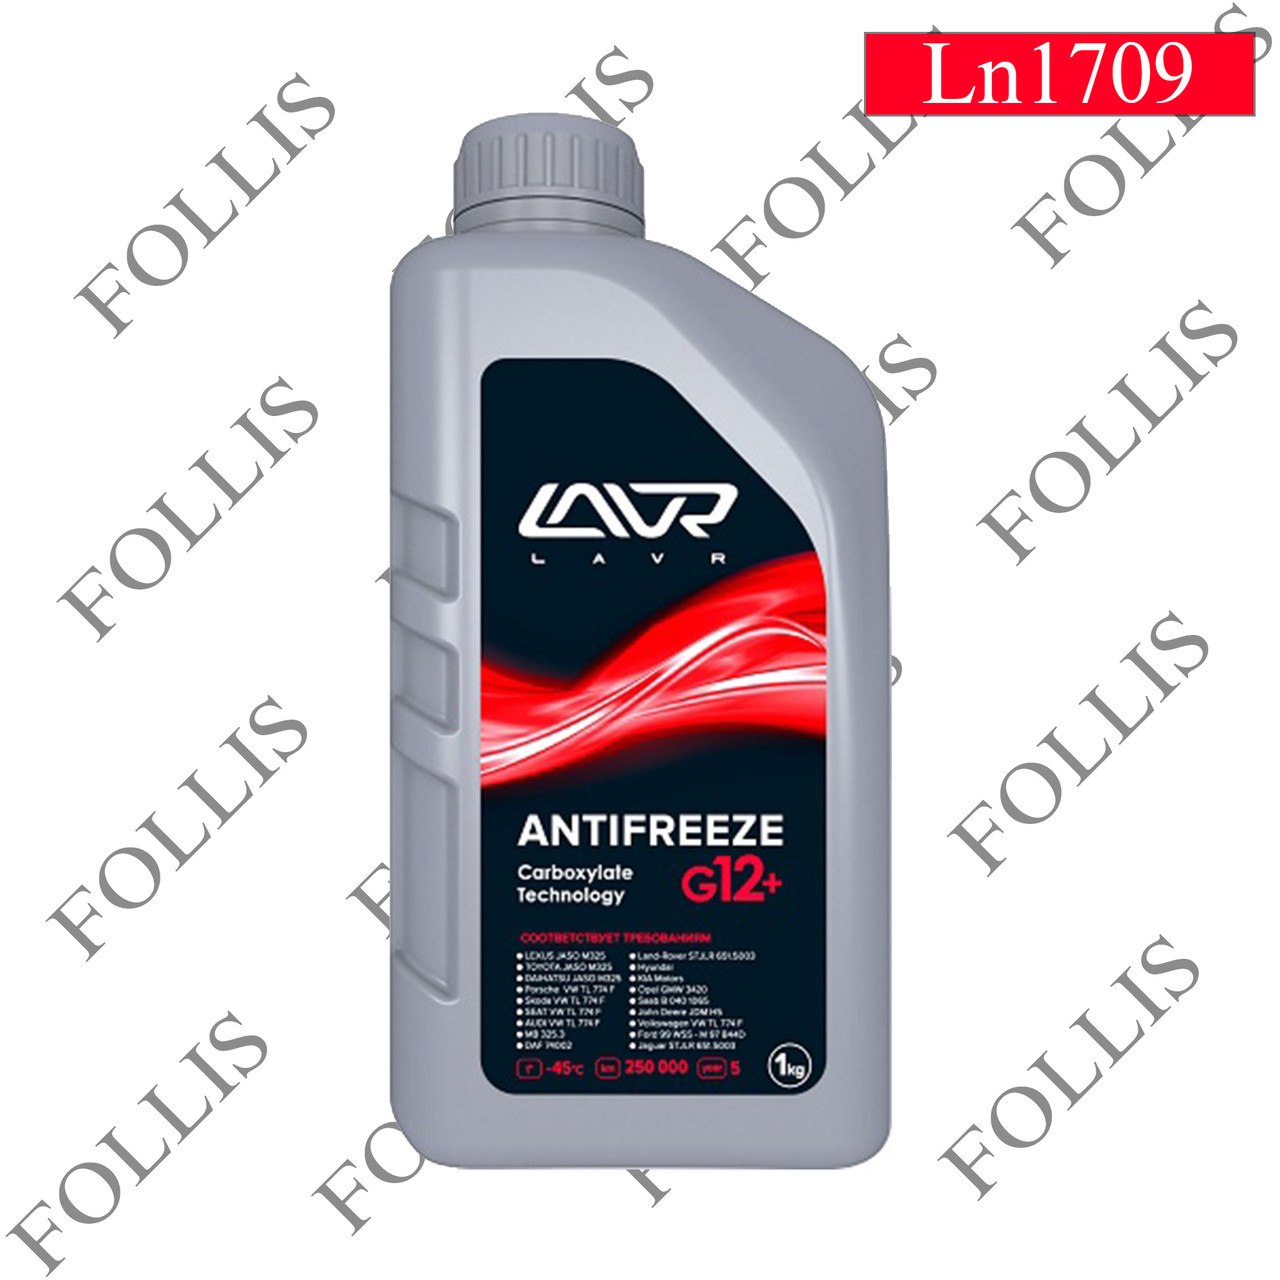 Охлаждающая жидкость ANTIFREEZE LAVR -45 G12+ 1кг